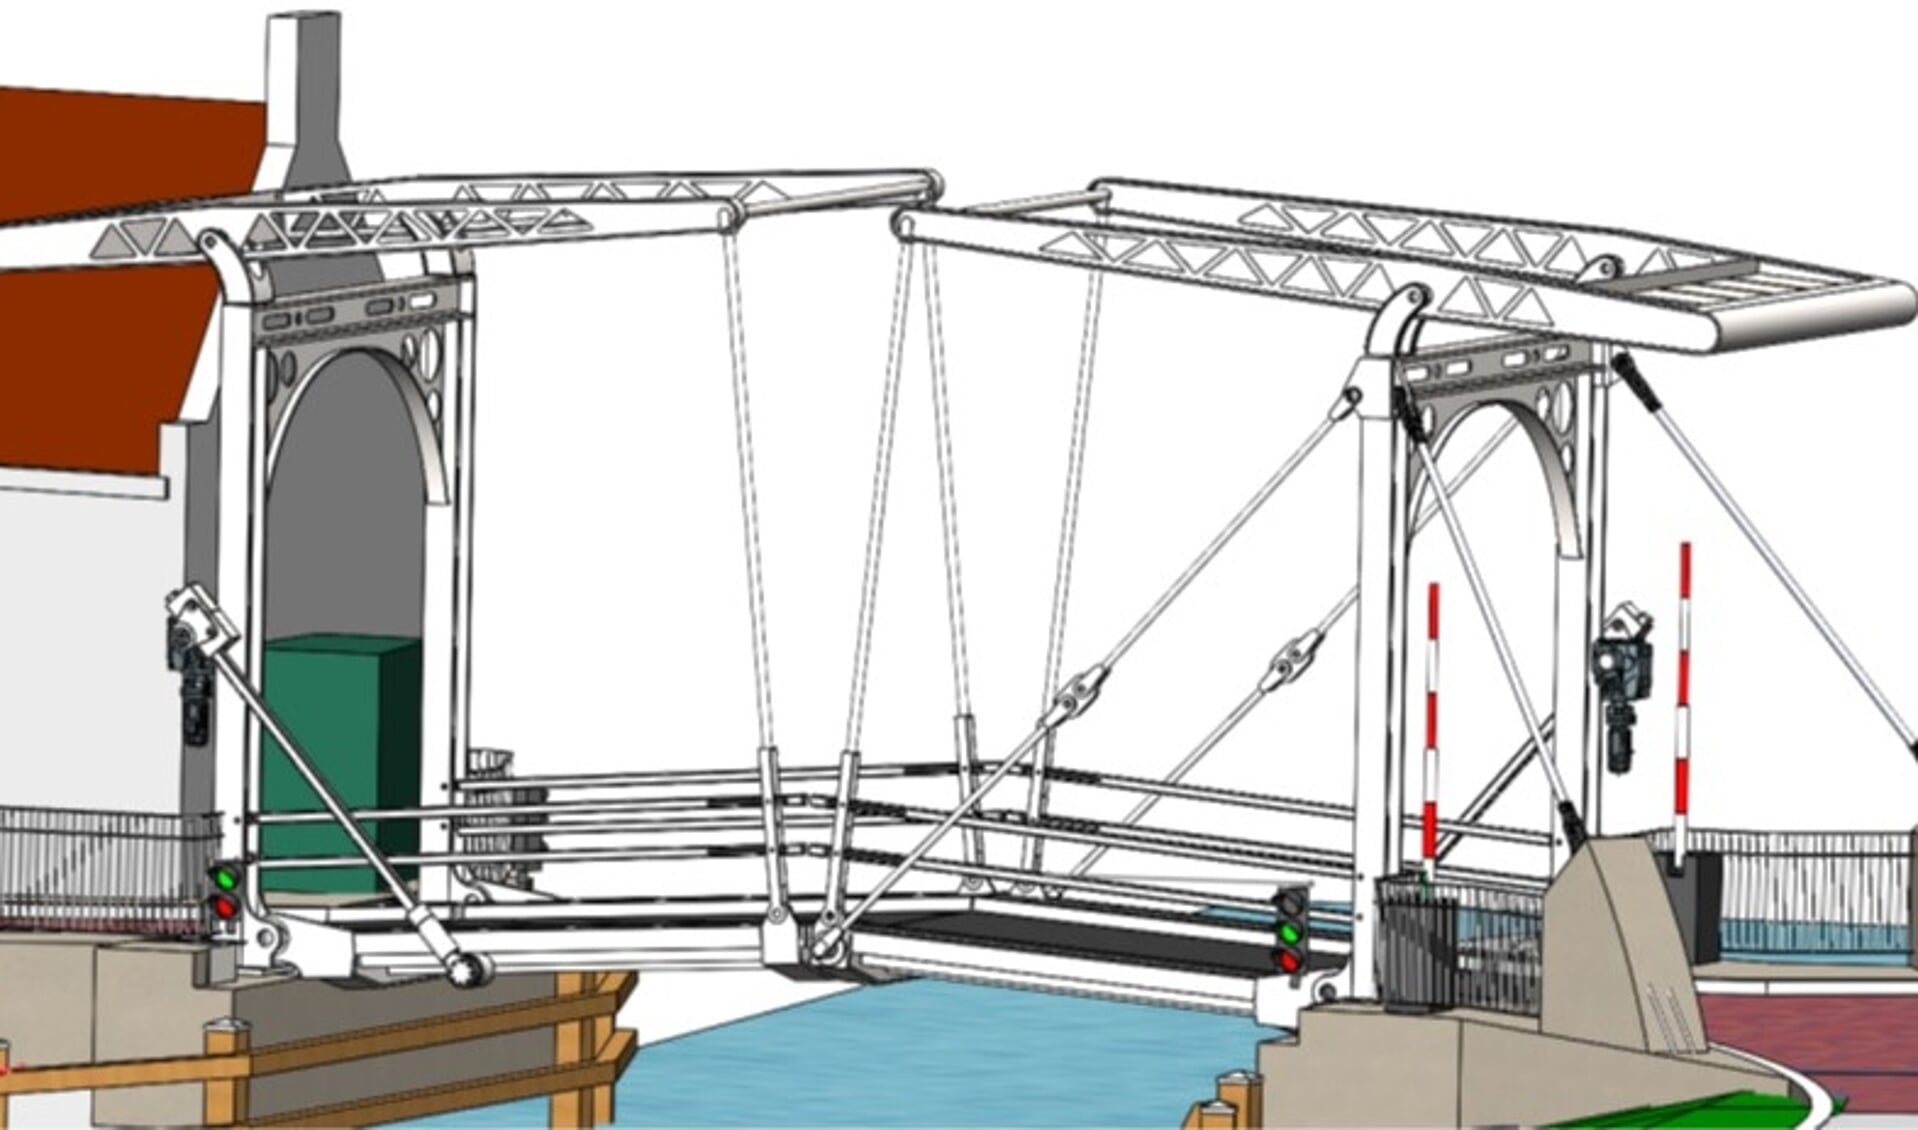 Een impressie van de brug met twee bewegende delen.